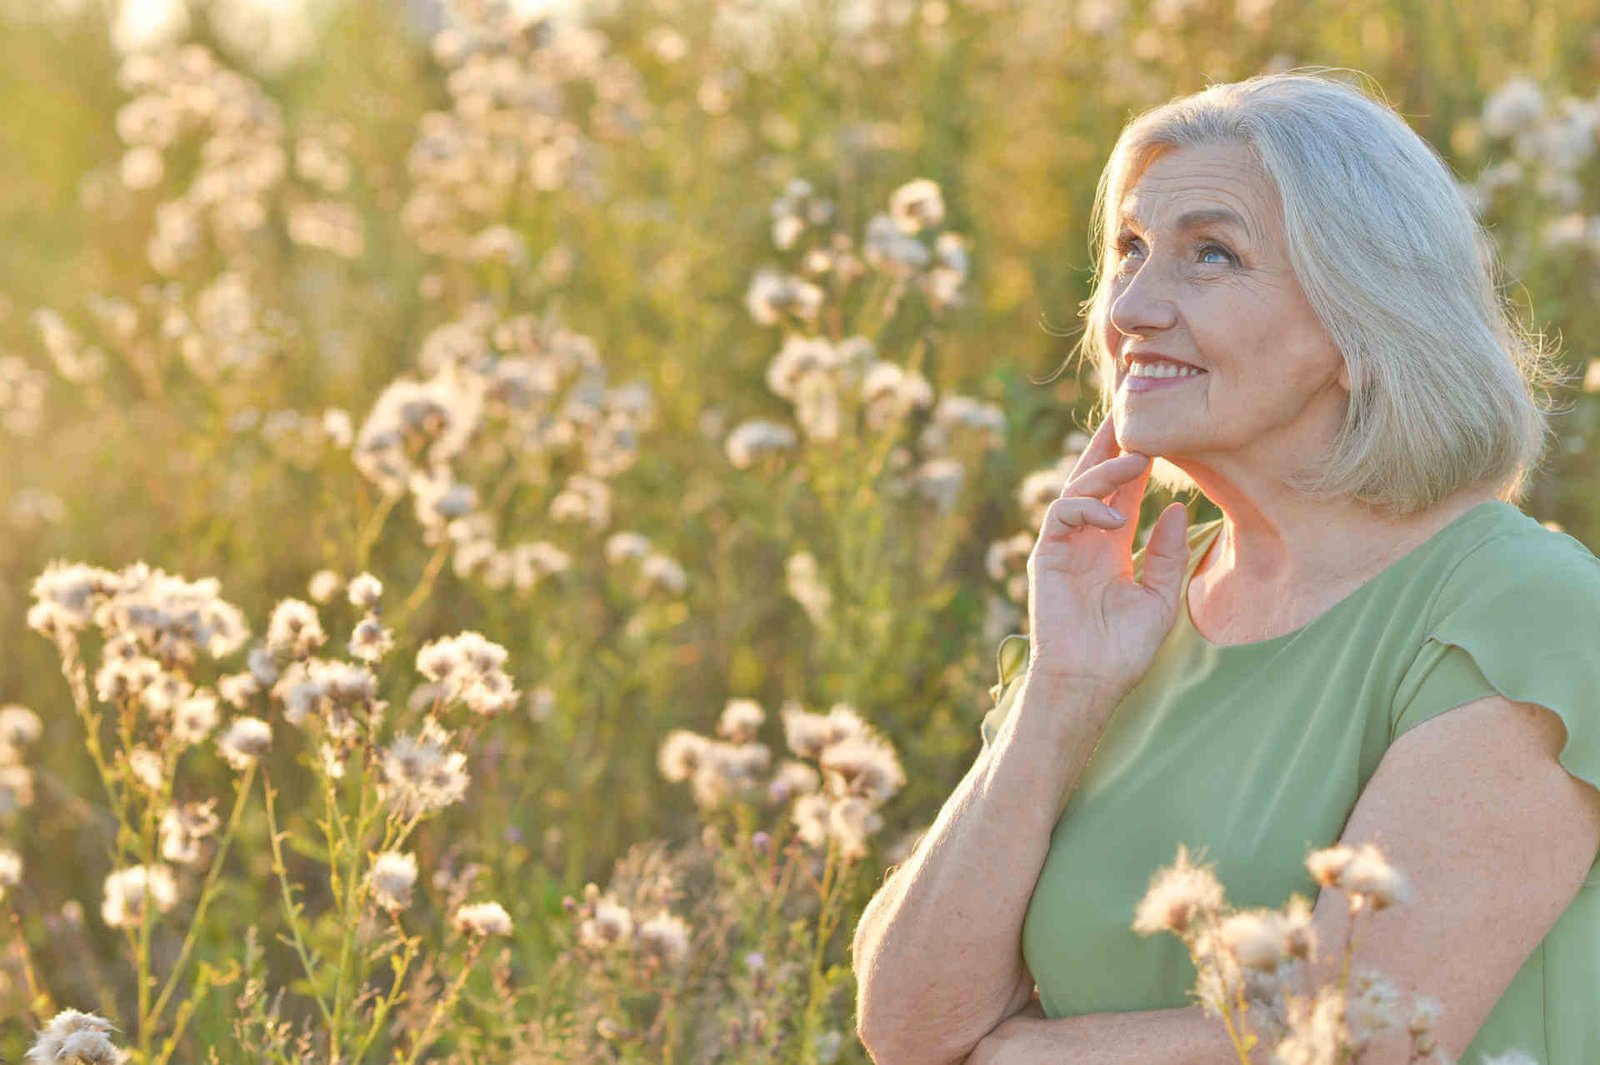 טיפול טבעי לגיל המעבר - אישה בגיל המעבר על רקע שדה פרחים